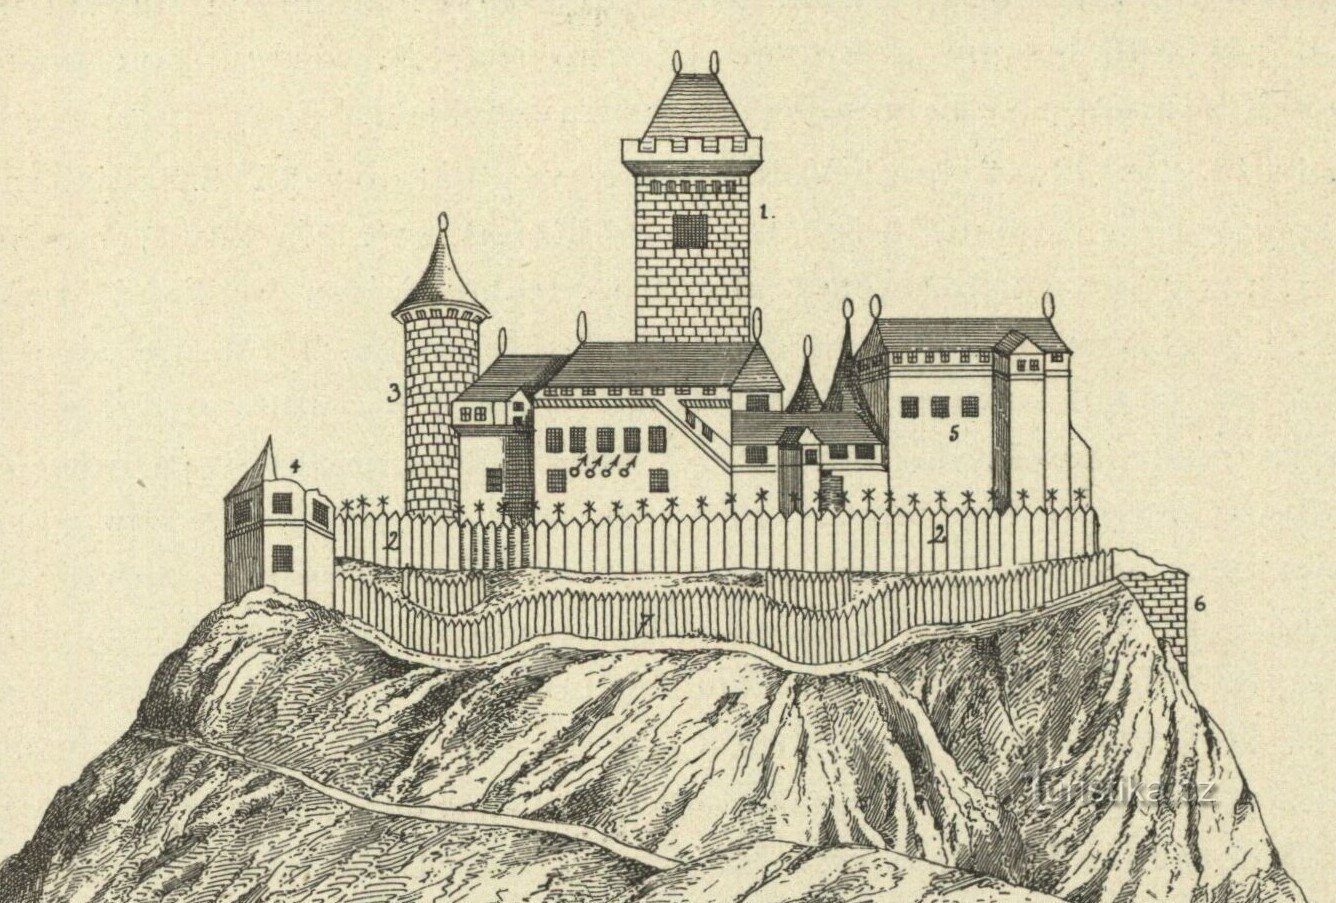 Formy zamku Veliš wg prof. Antonín Truhlára w Sedláčkovy